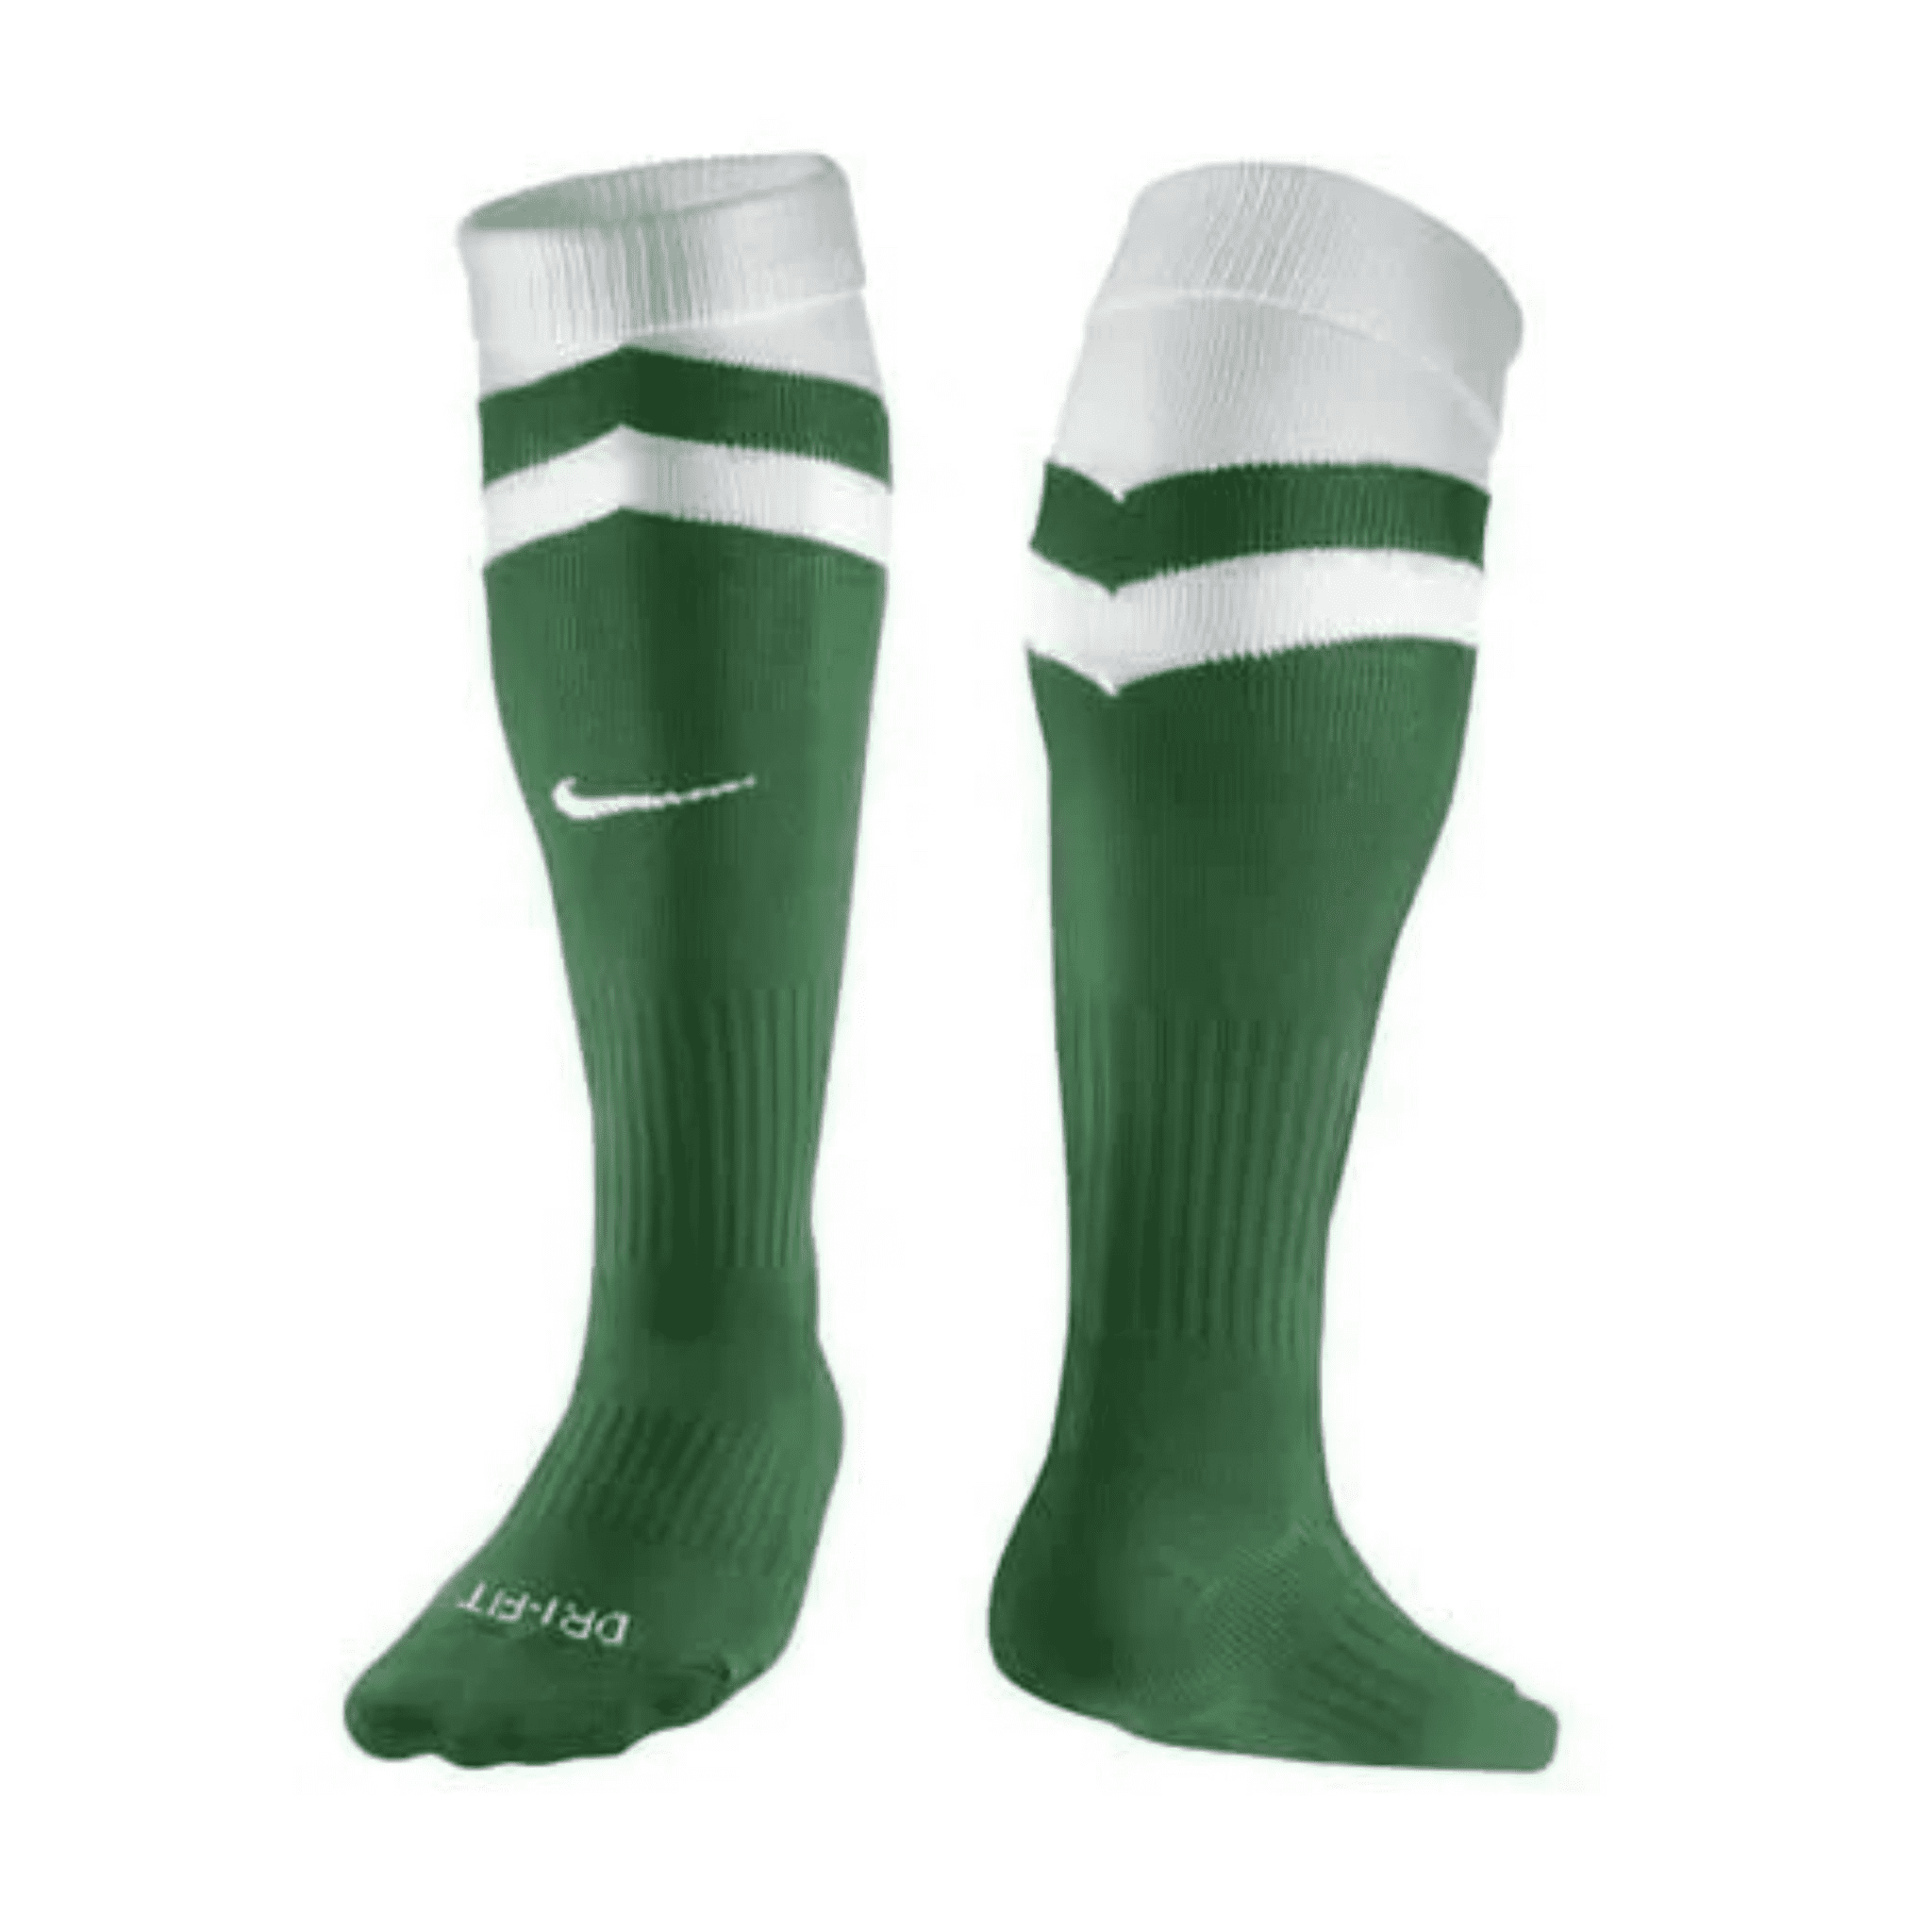 Nike Vapor II Socks (Spring Leaf/White)